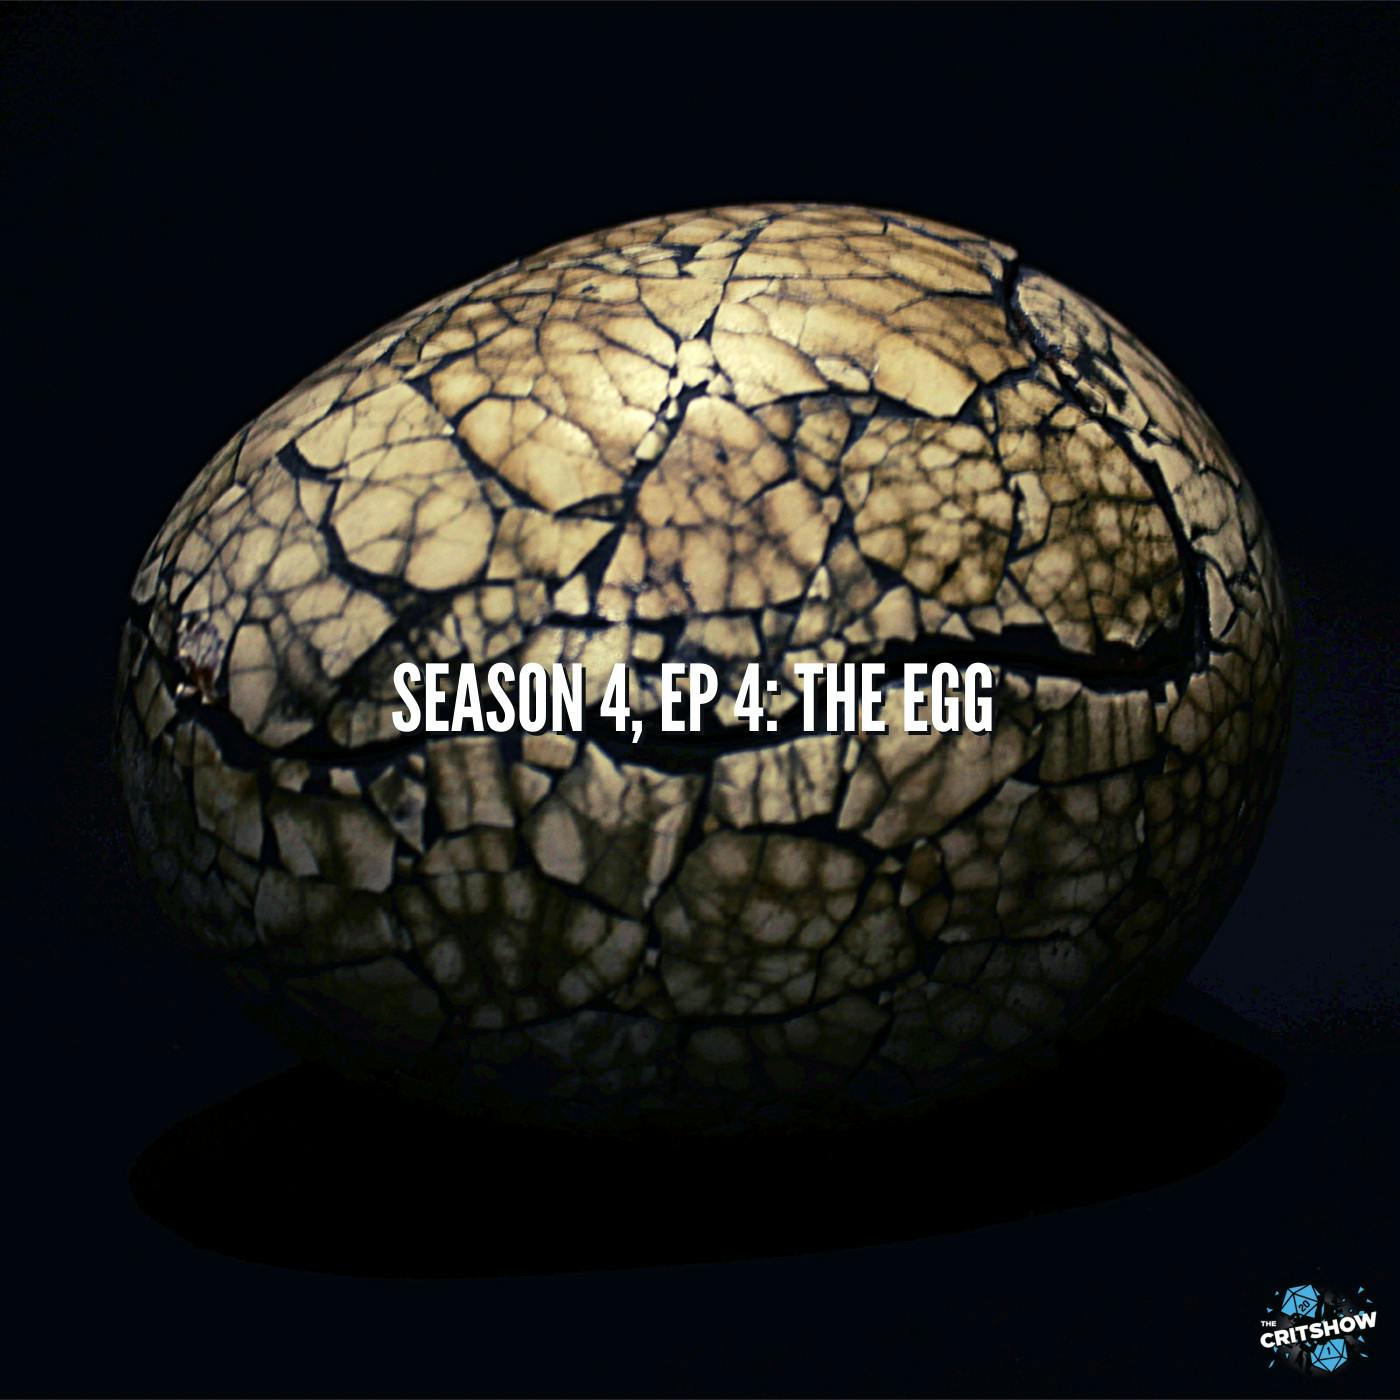 The Egg (S4, E4)